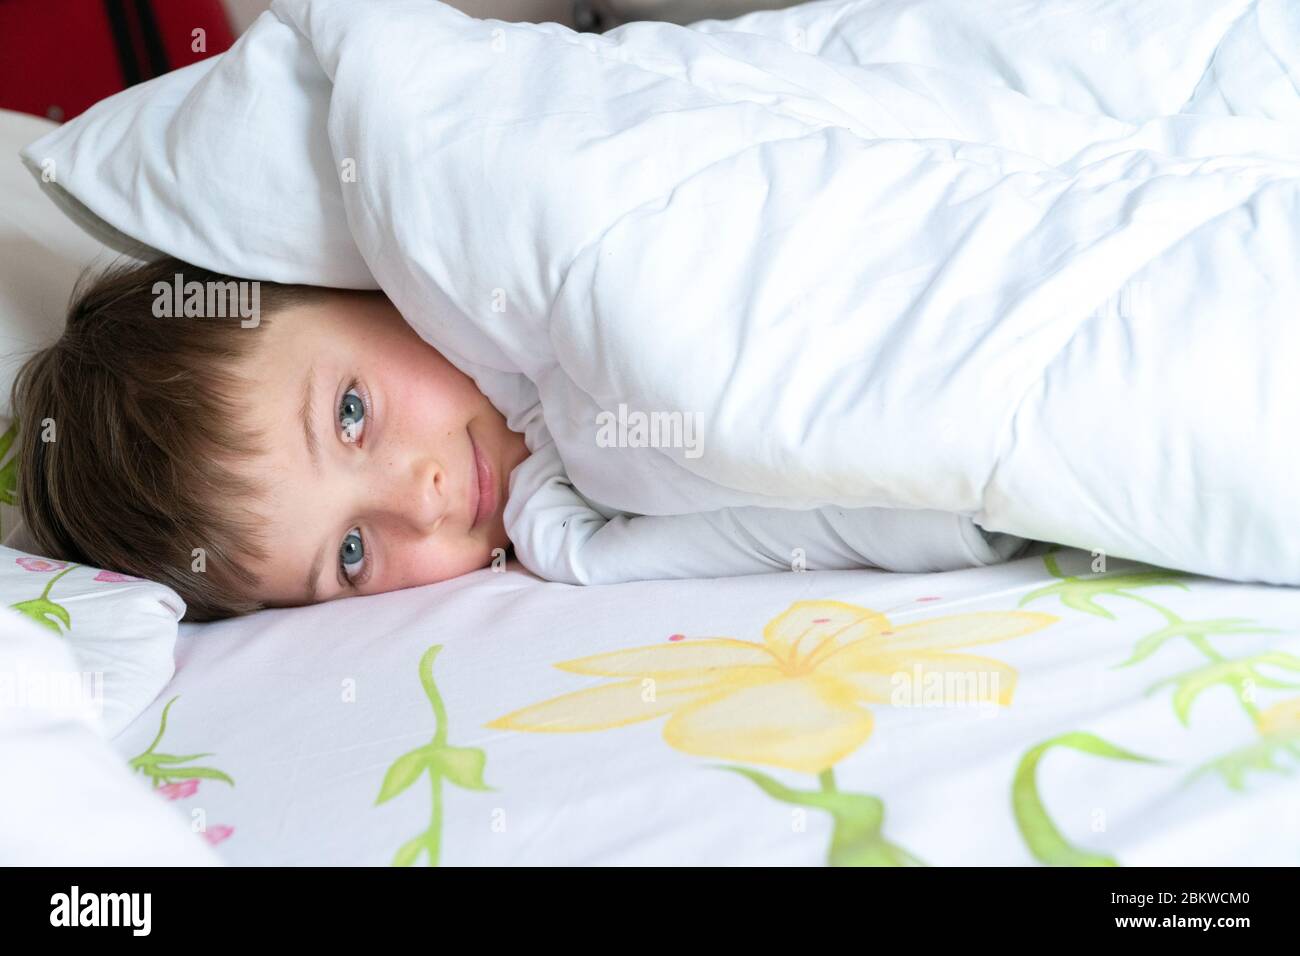 Draufsicht des kleinen Jungen im Bett, der sein Gesicht mit einer weißen Decke oder einem Deckblatt bedeckt. Schlafender Junge. Stockfoto